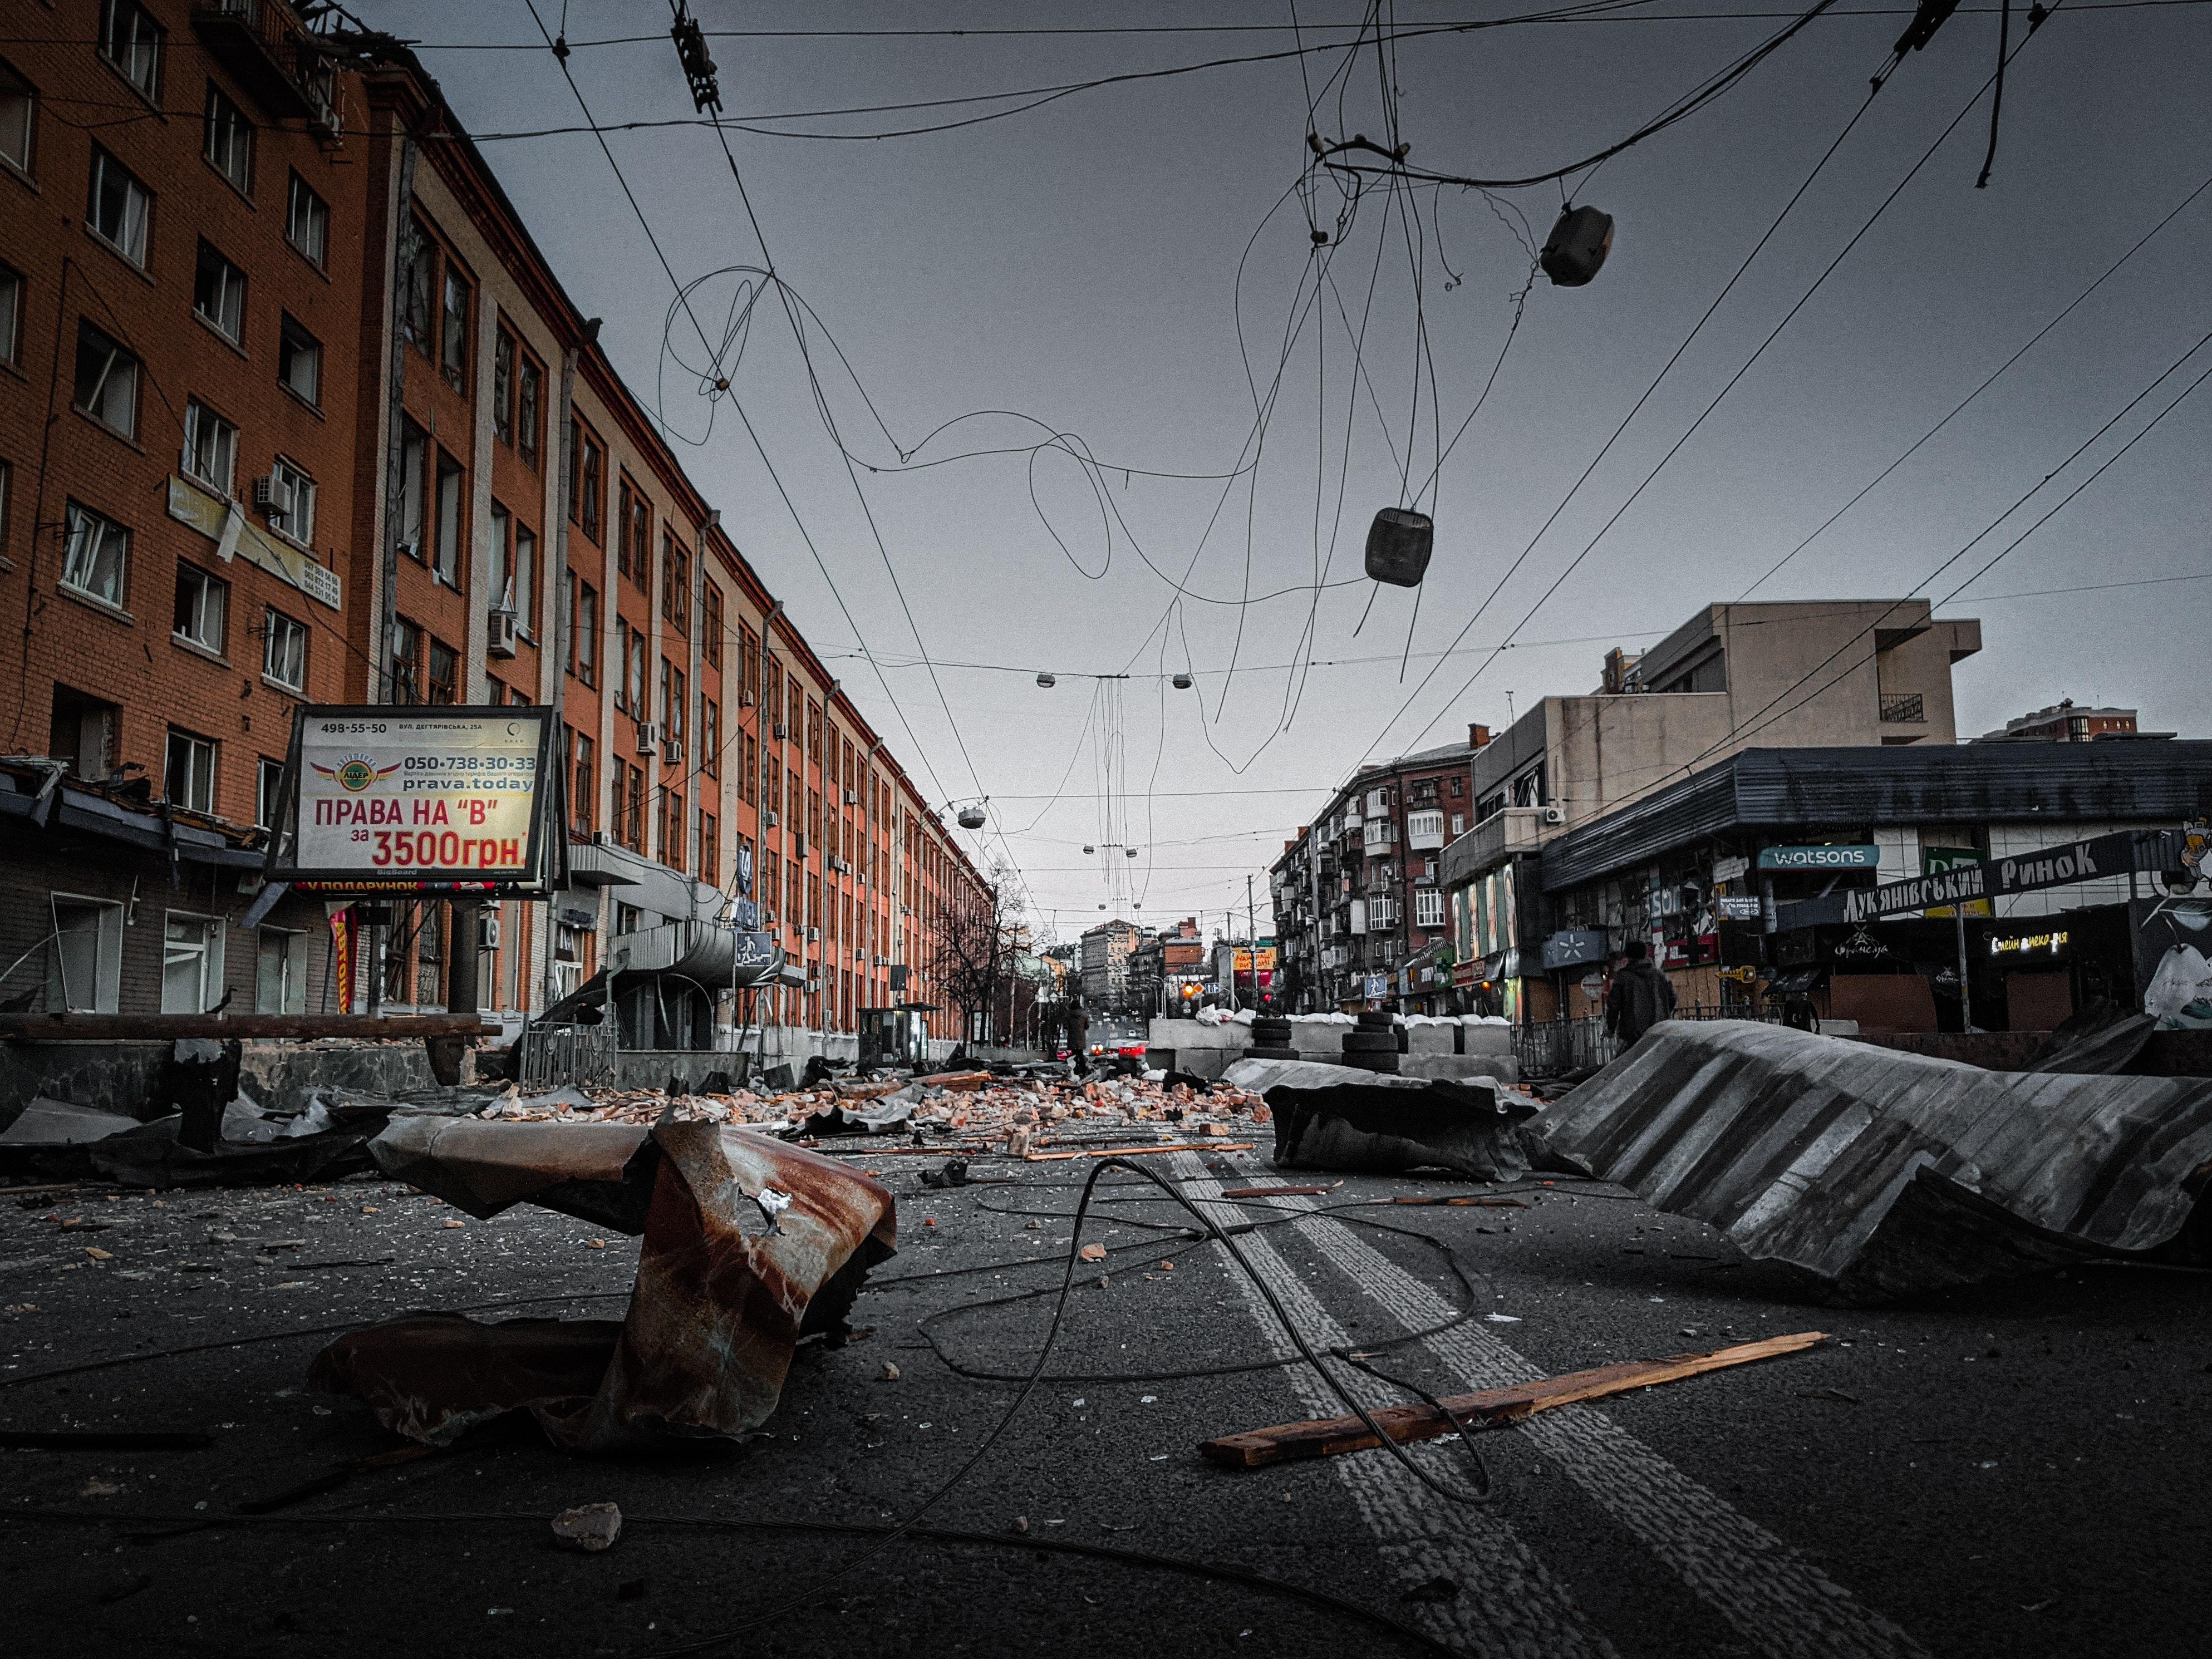 City street destroyed by Алесь Усцінаў via pexel